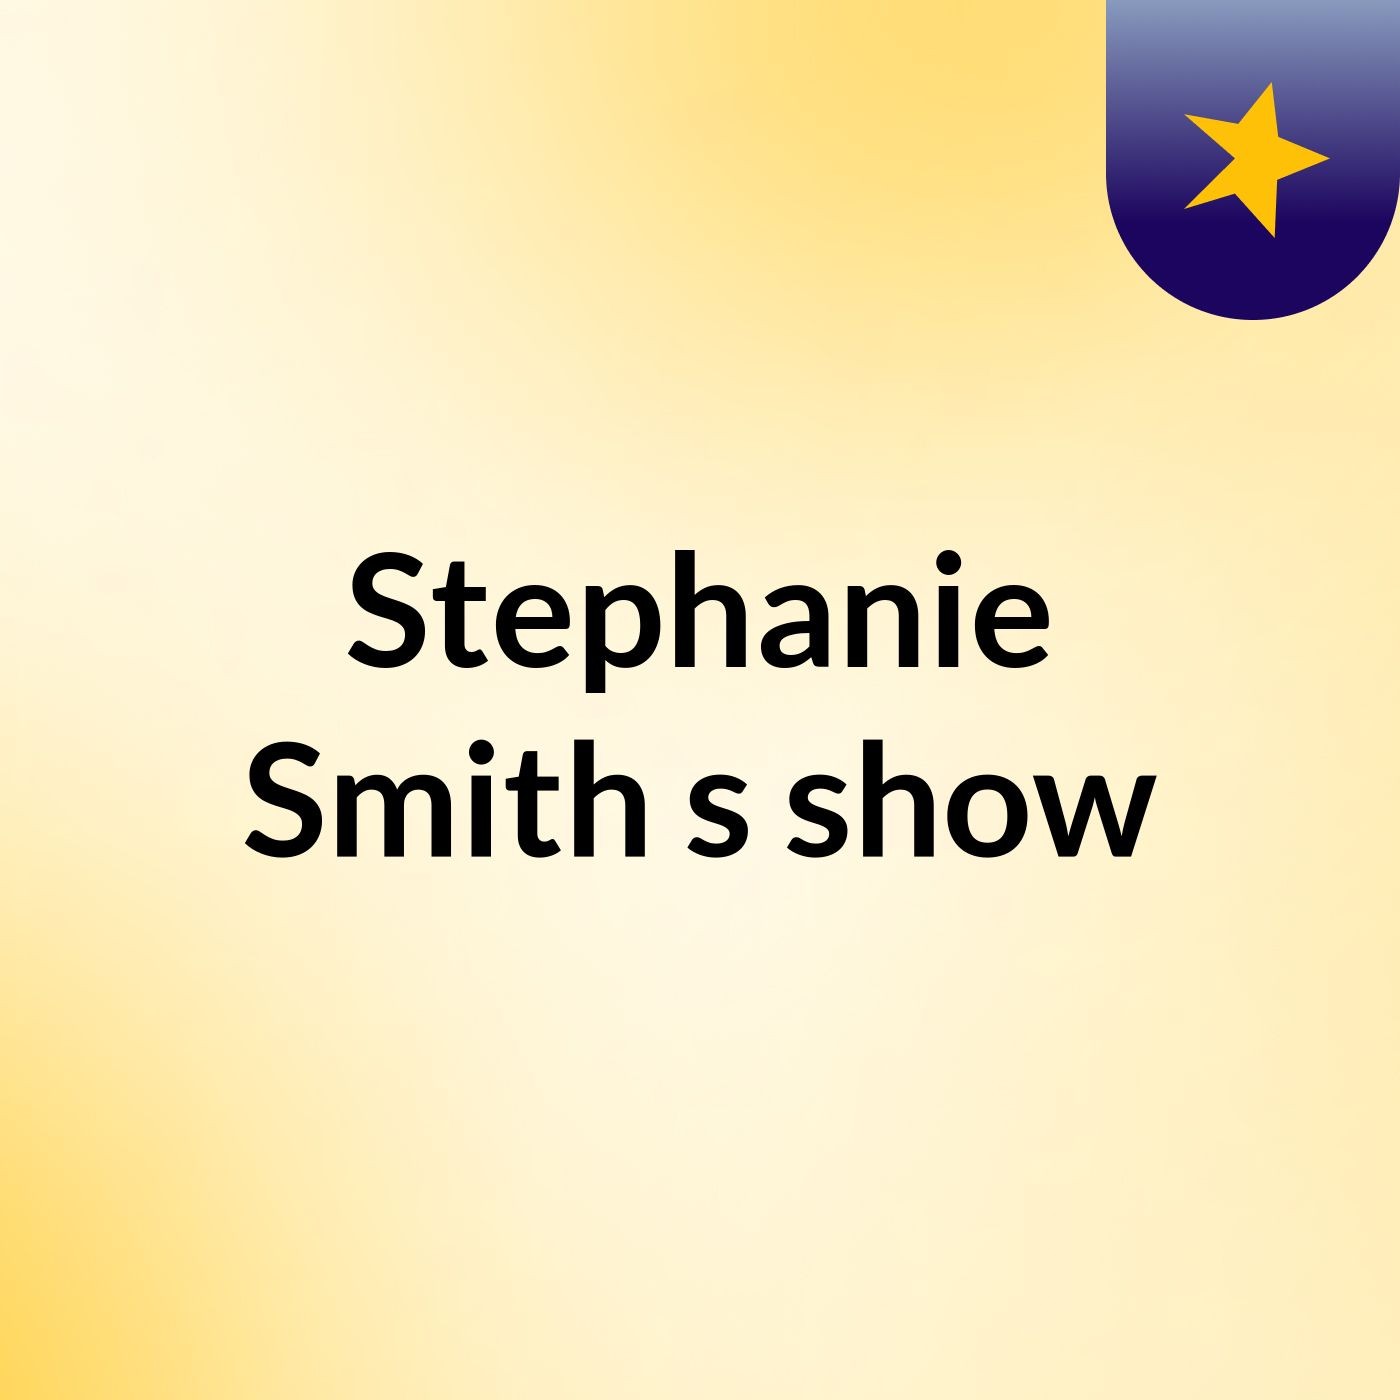 Stephanie Smith's show